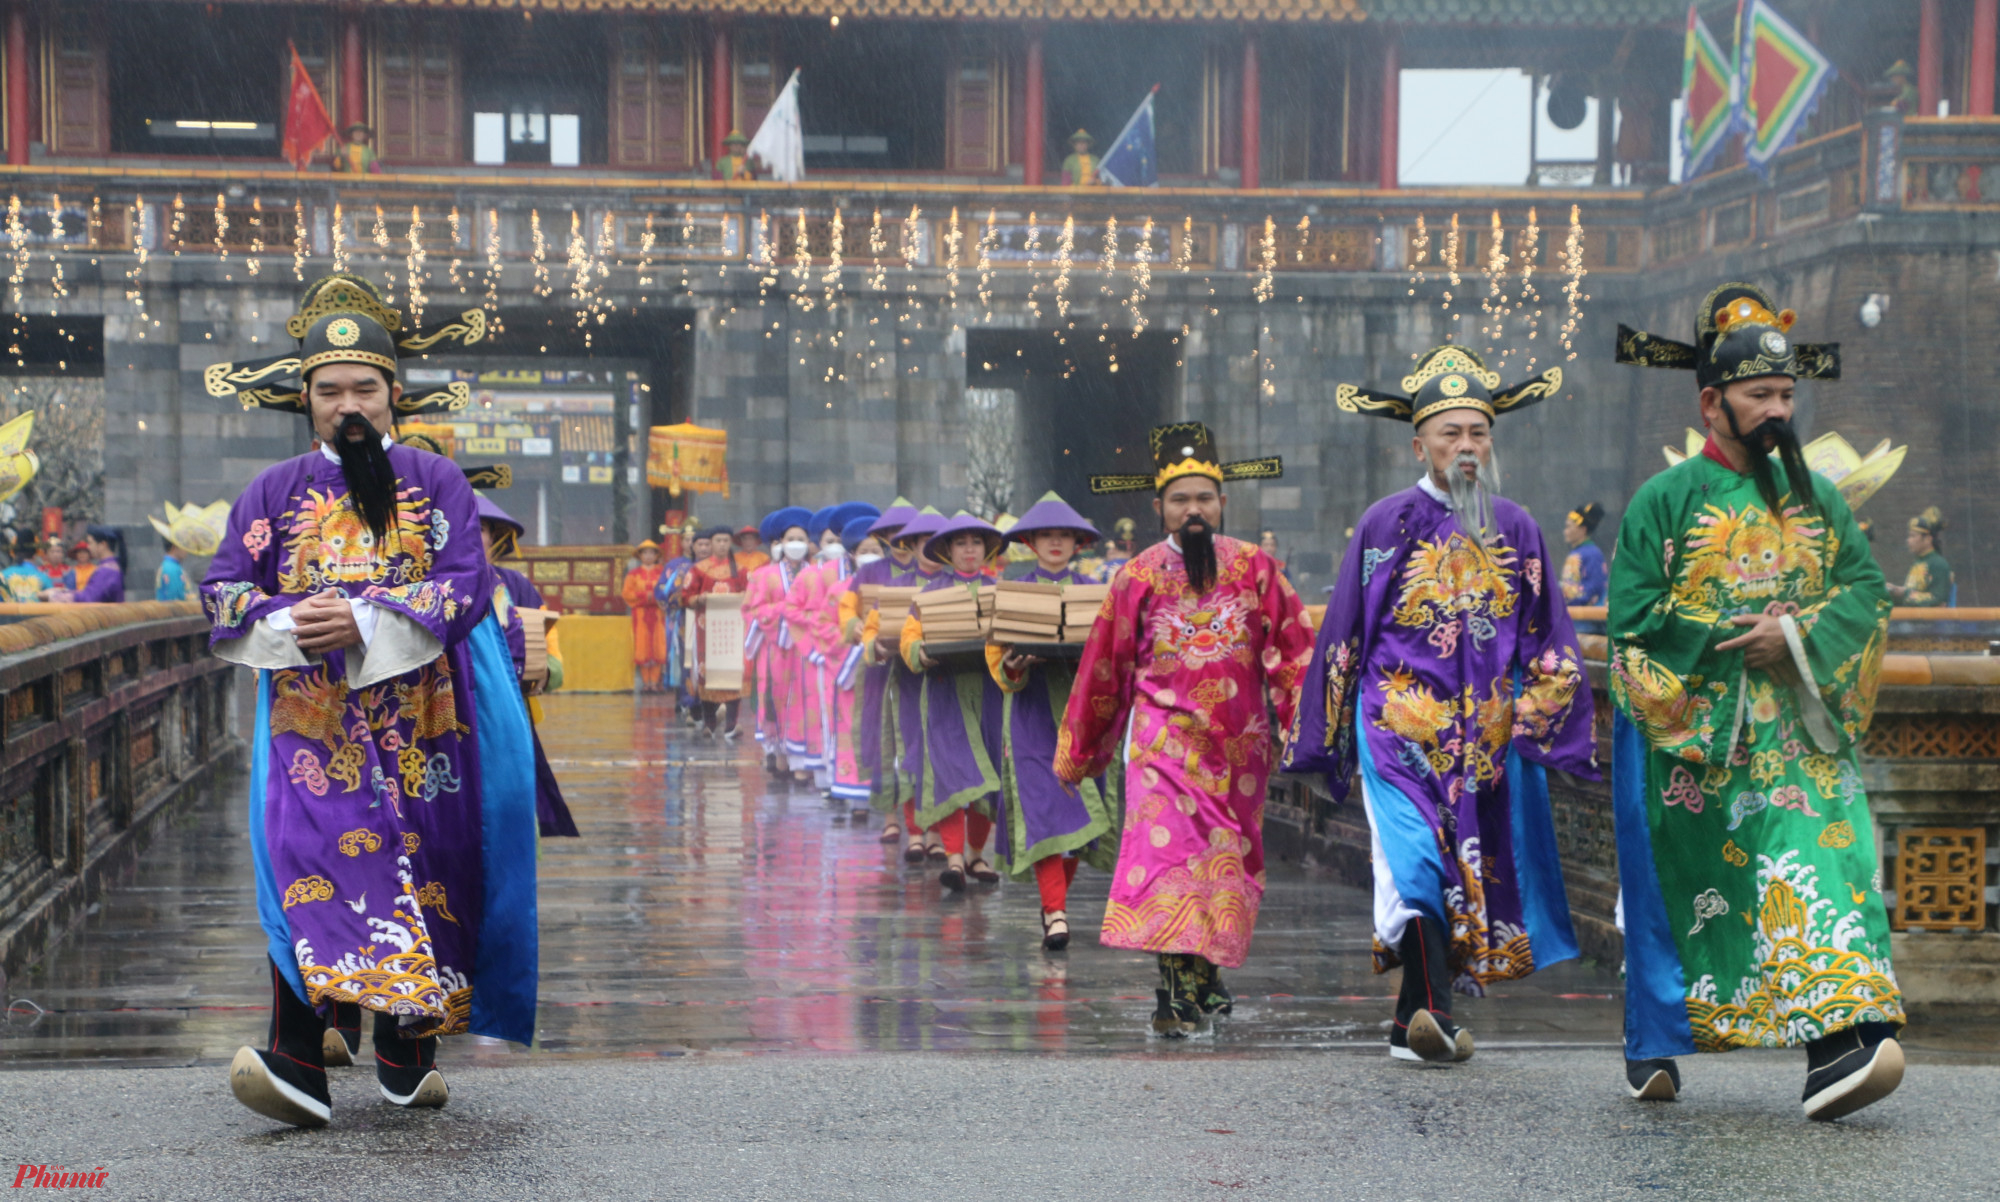 Dù trời mưa nhưng nghi lễ diễn ra hết sức trang nghiêm